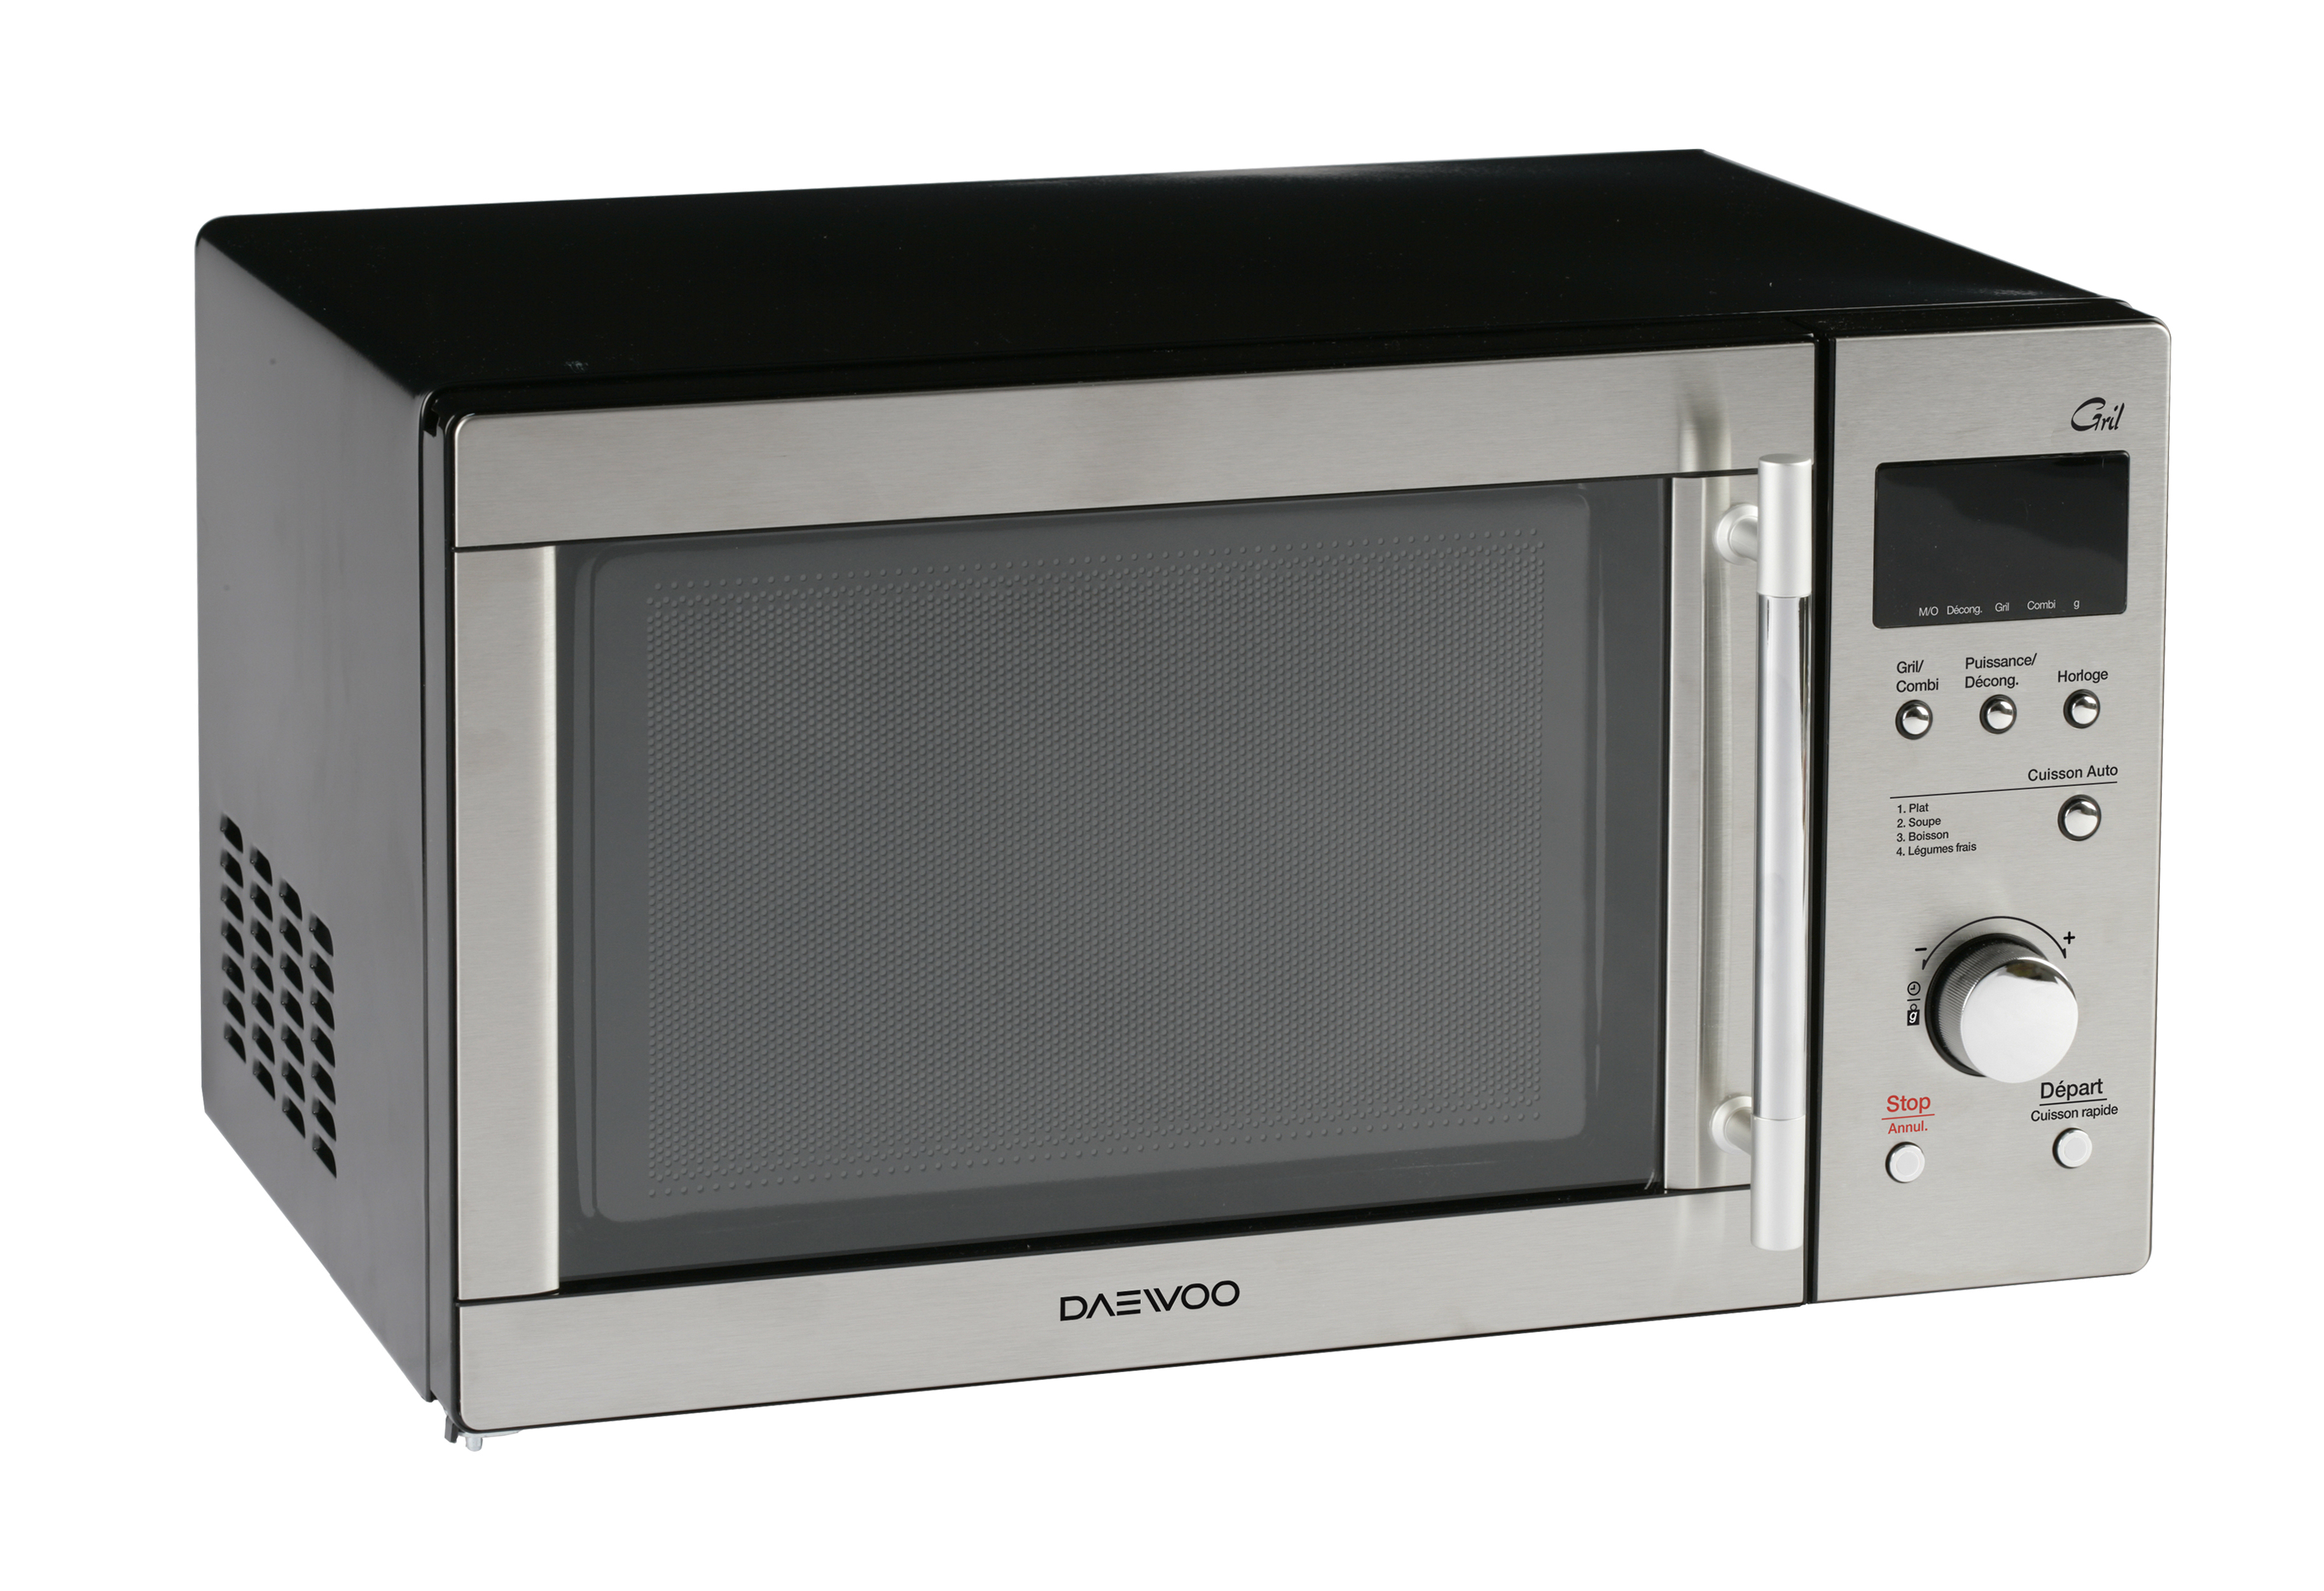 Свч соло. Микроволновая печь Daewoo Microwave. Микроволновая печь Daewoo Combi Grill. Микроволновая печь Daewoo Kog. Микроволновая печь Daewoo нержавейка.